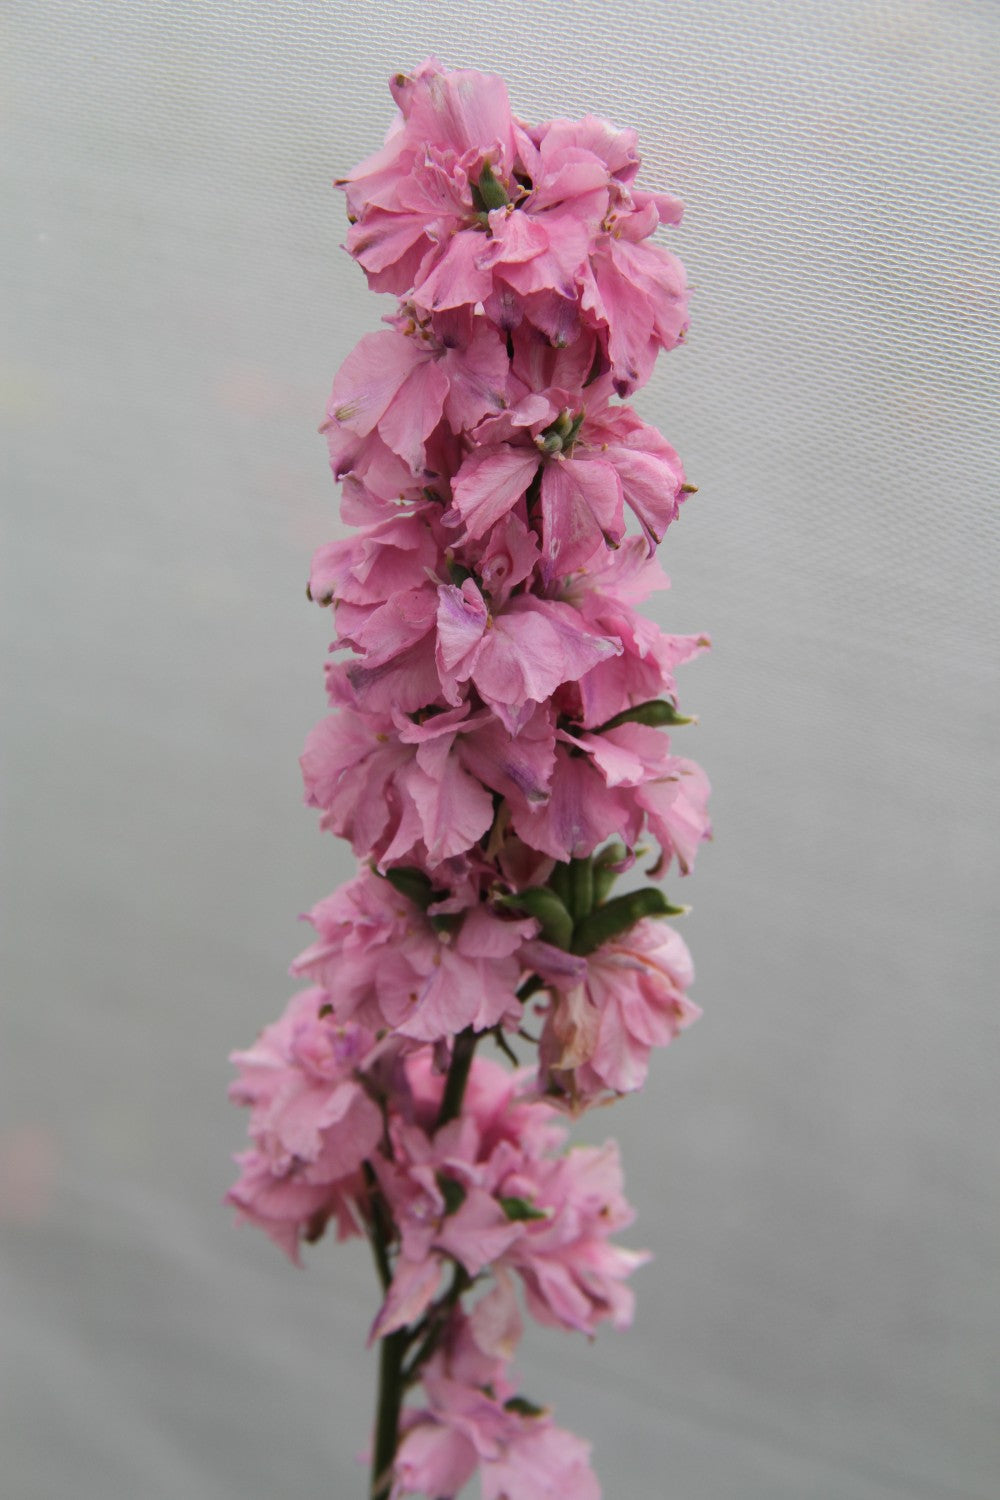 Ridderspoor Light Pink - Consolida ajacis - closeup